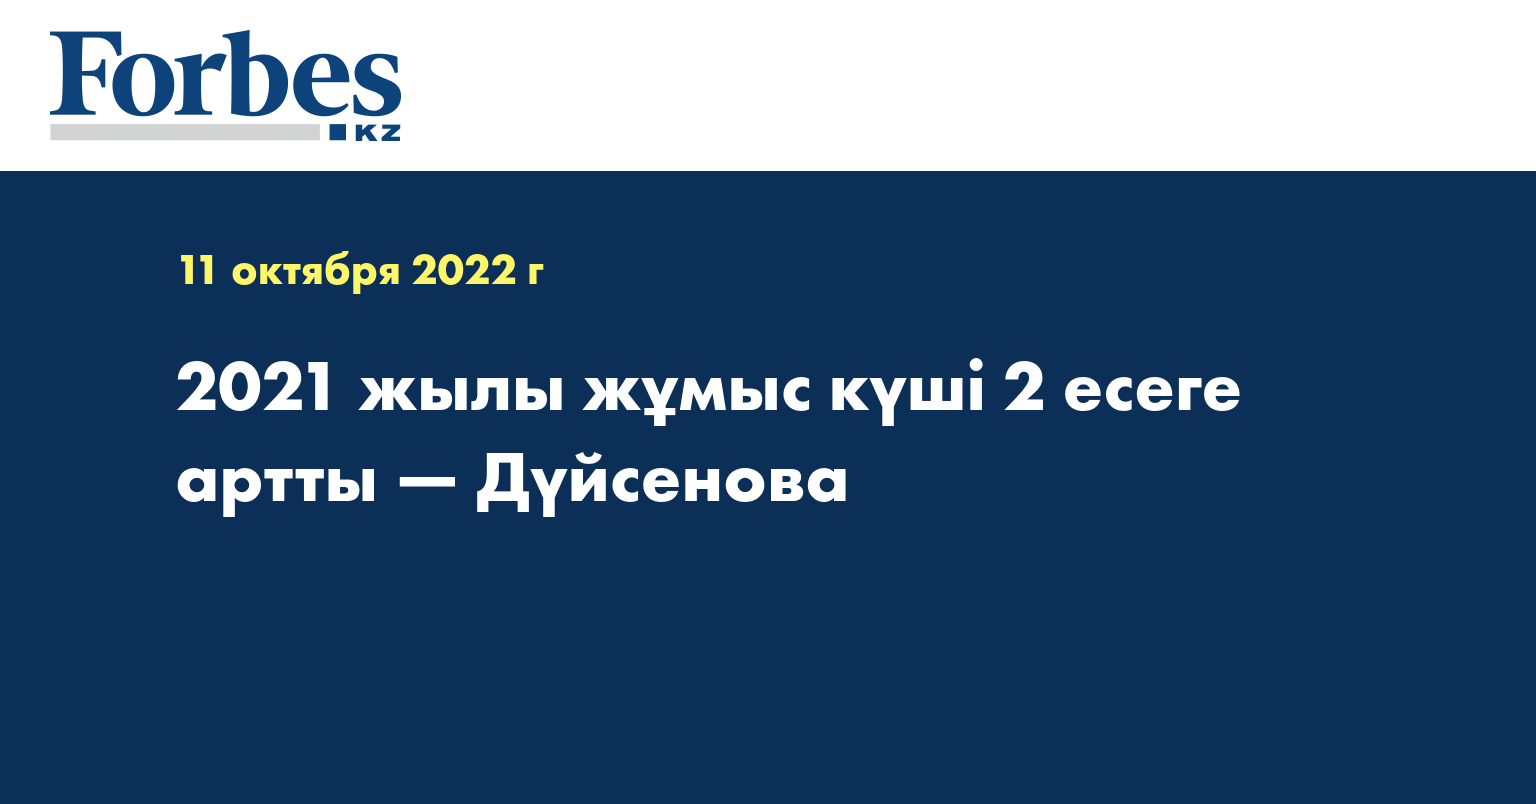 2021 жылы жұмыс күші 2 есеге артты — Дүйсенова